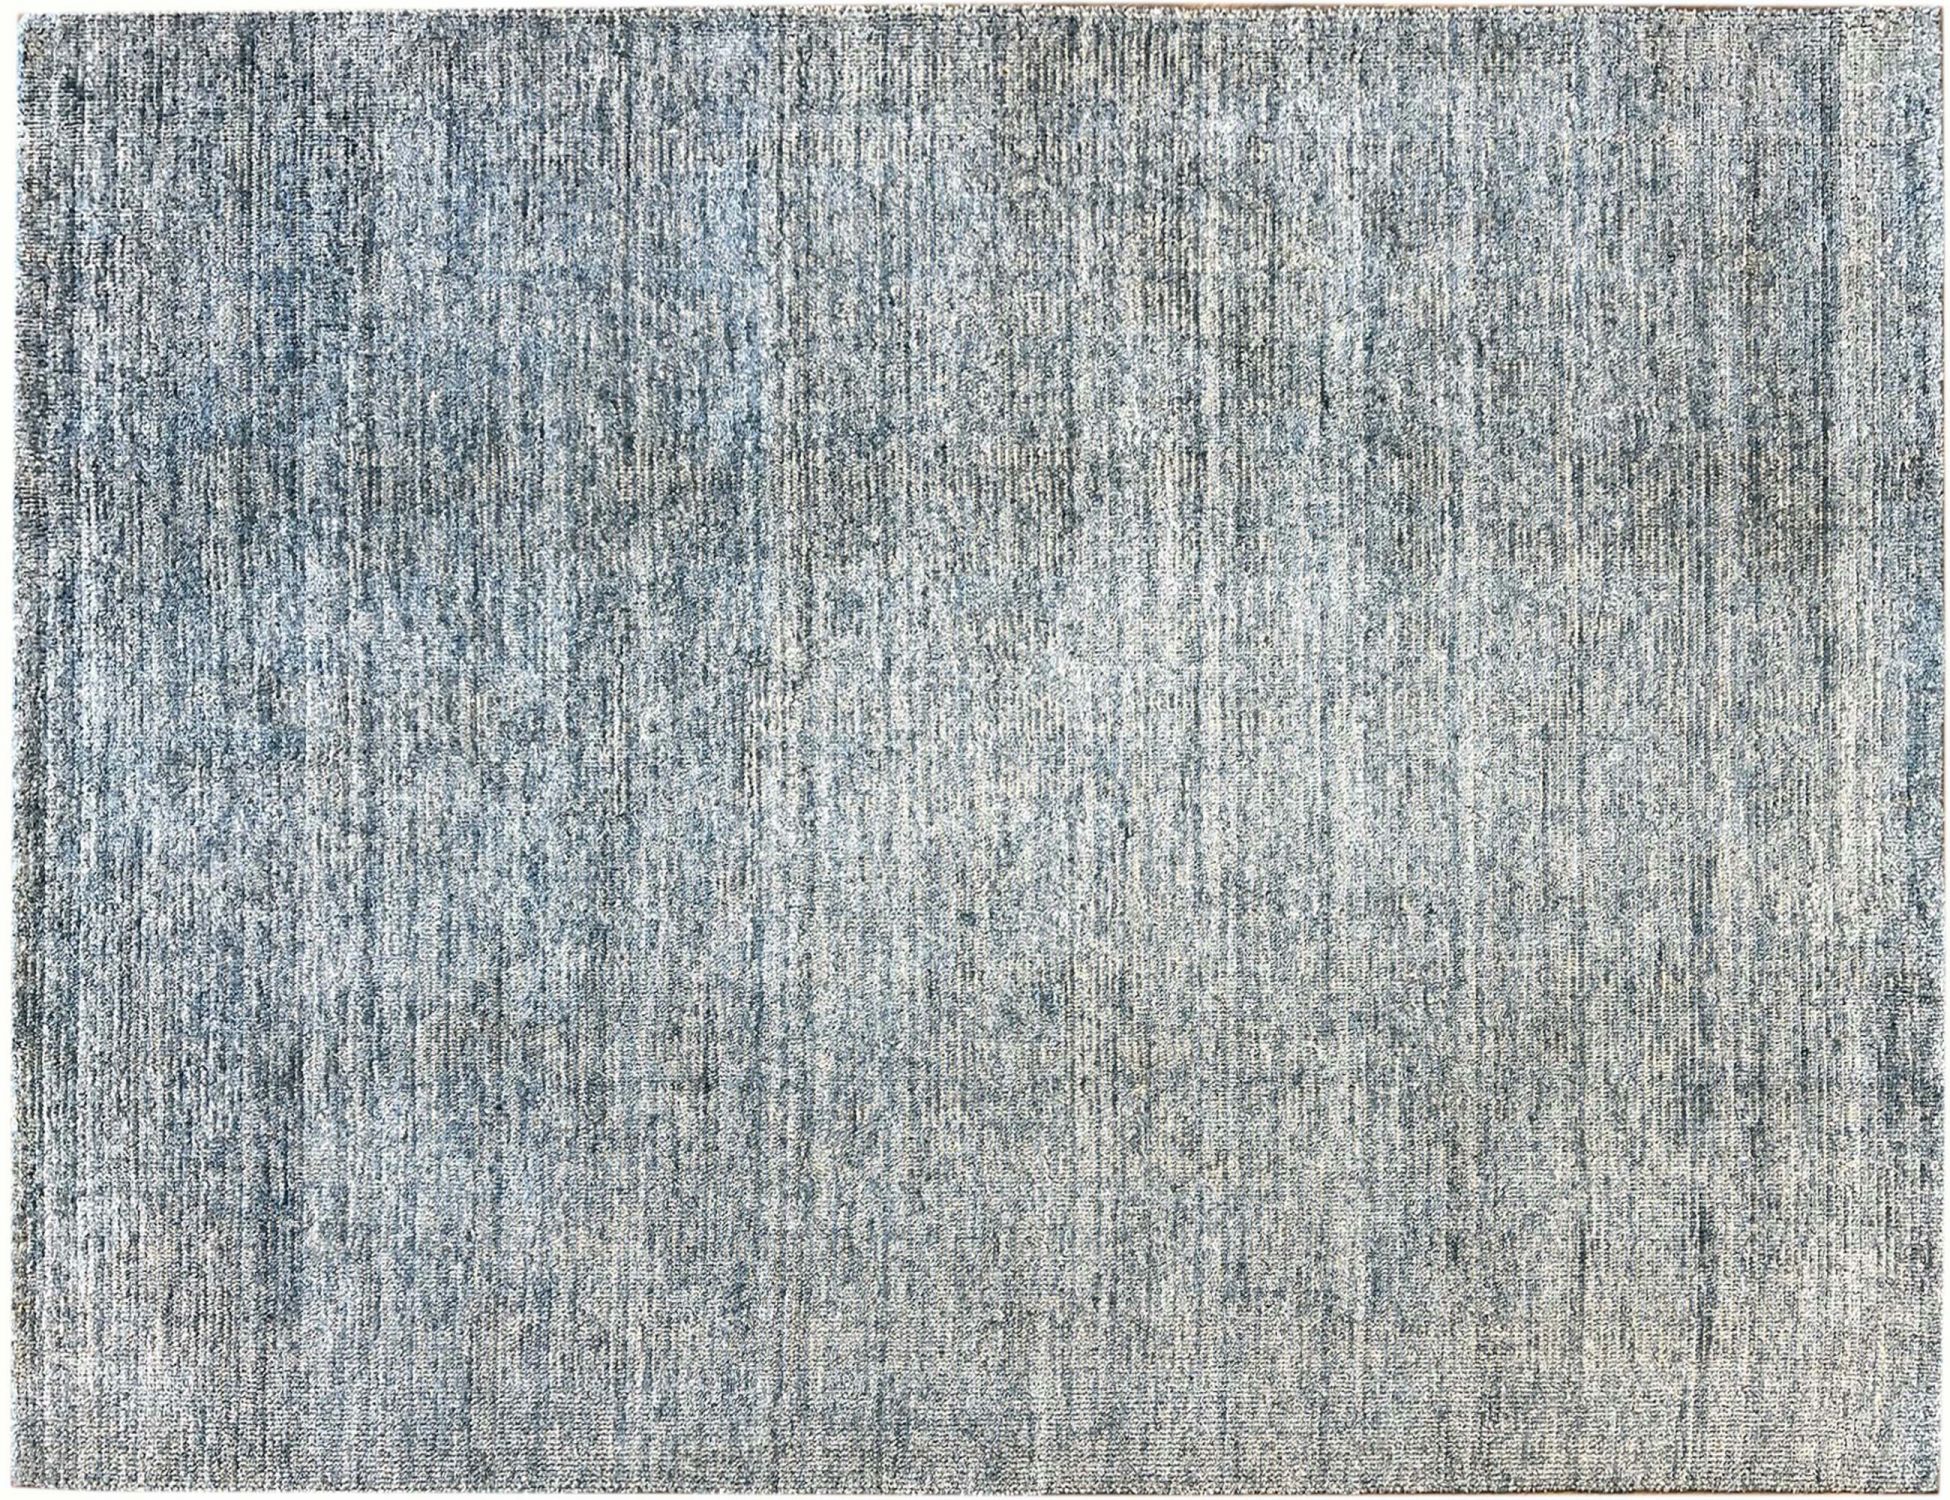 Indian Carpet   <br/>240 x 170 cm